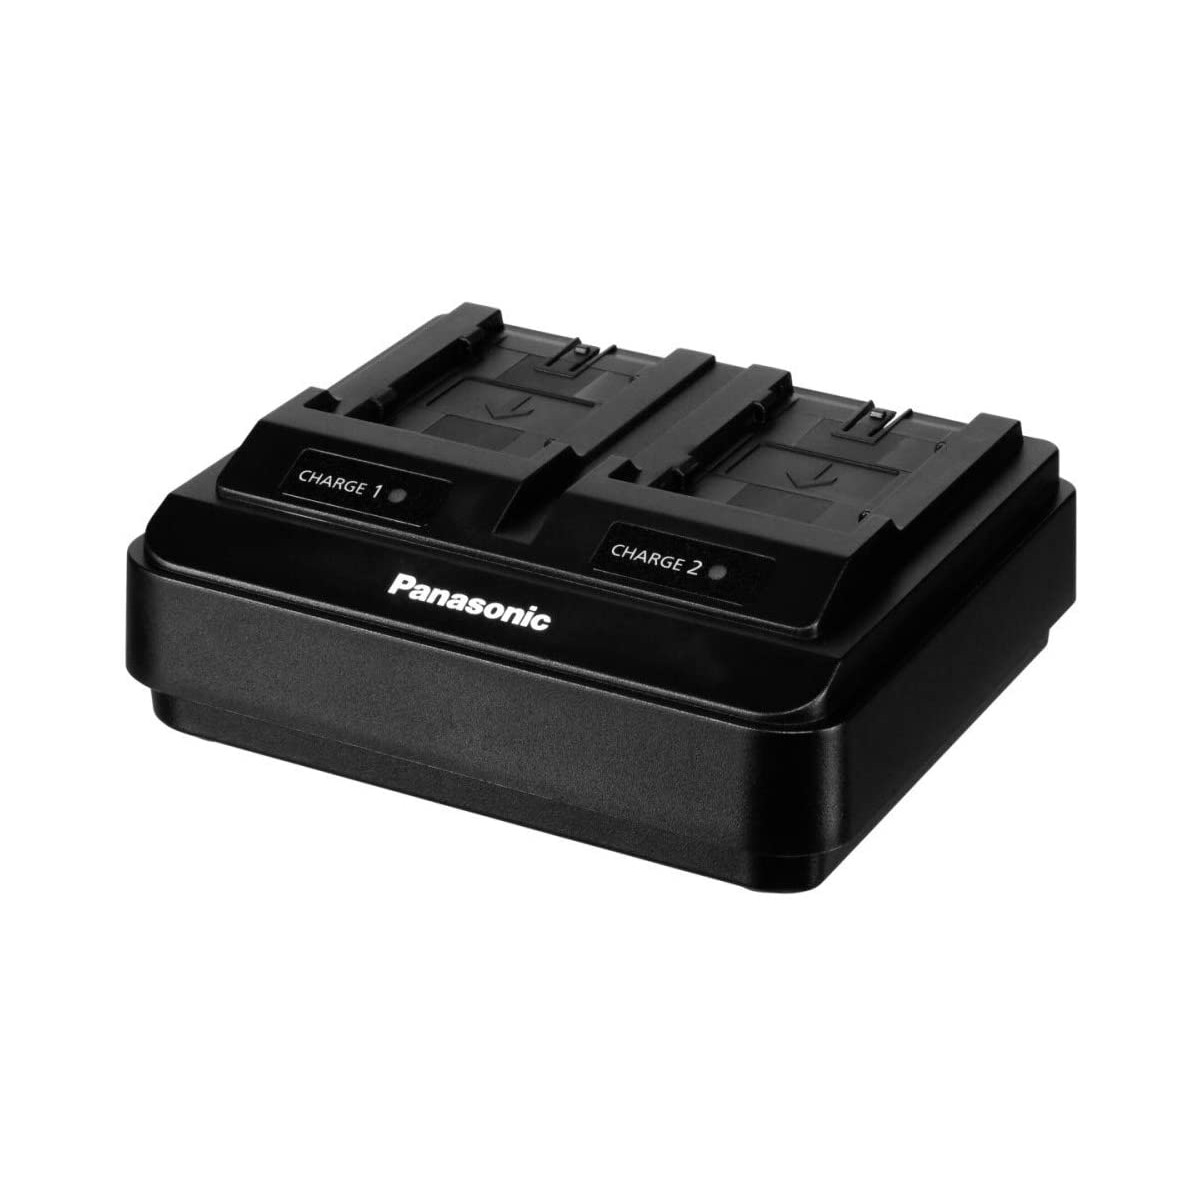 Cargador de baterías para cámaras AJ-PX270, AJ-PX230, AG-DVX200